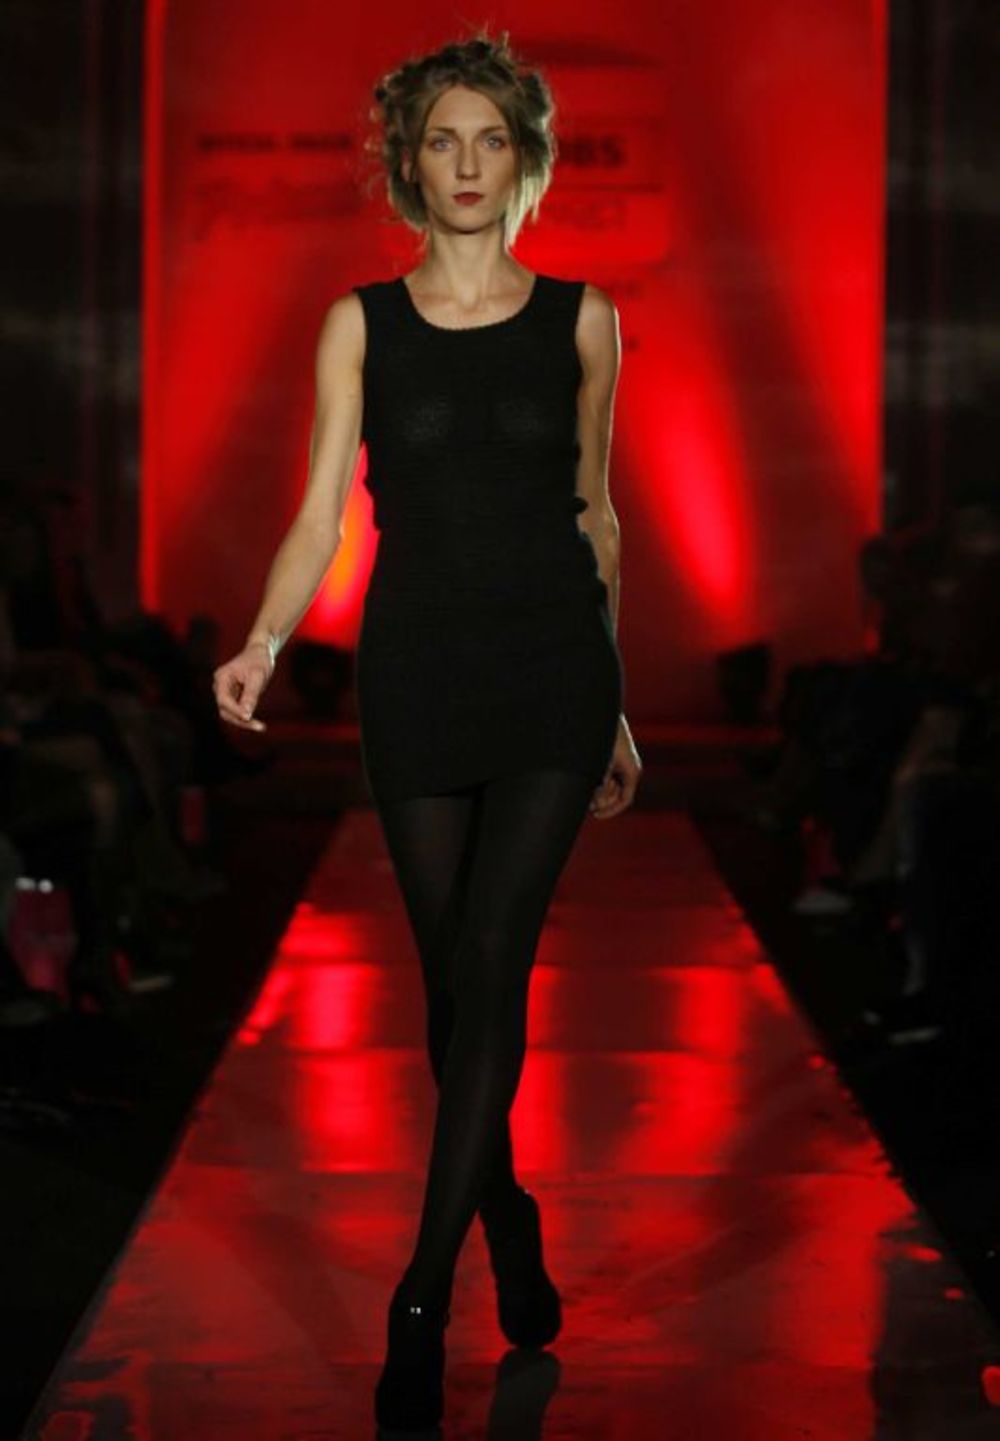 Pobednica konkursa Grazia Selection Sanda Simona Janković, predstavila je na Jacobs Fashion Selectionu 12. oktobra u balskoj dvorani Doma garde kolekciju Dark Side of Venus, koja je inspirisana tamnom stranom ženske prirode